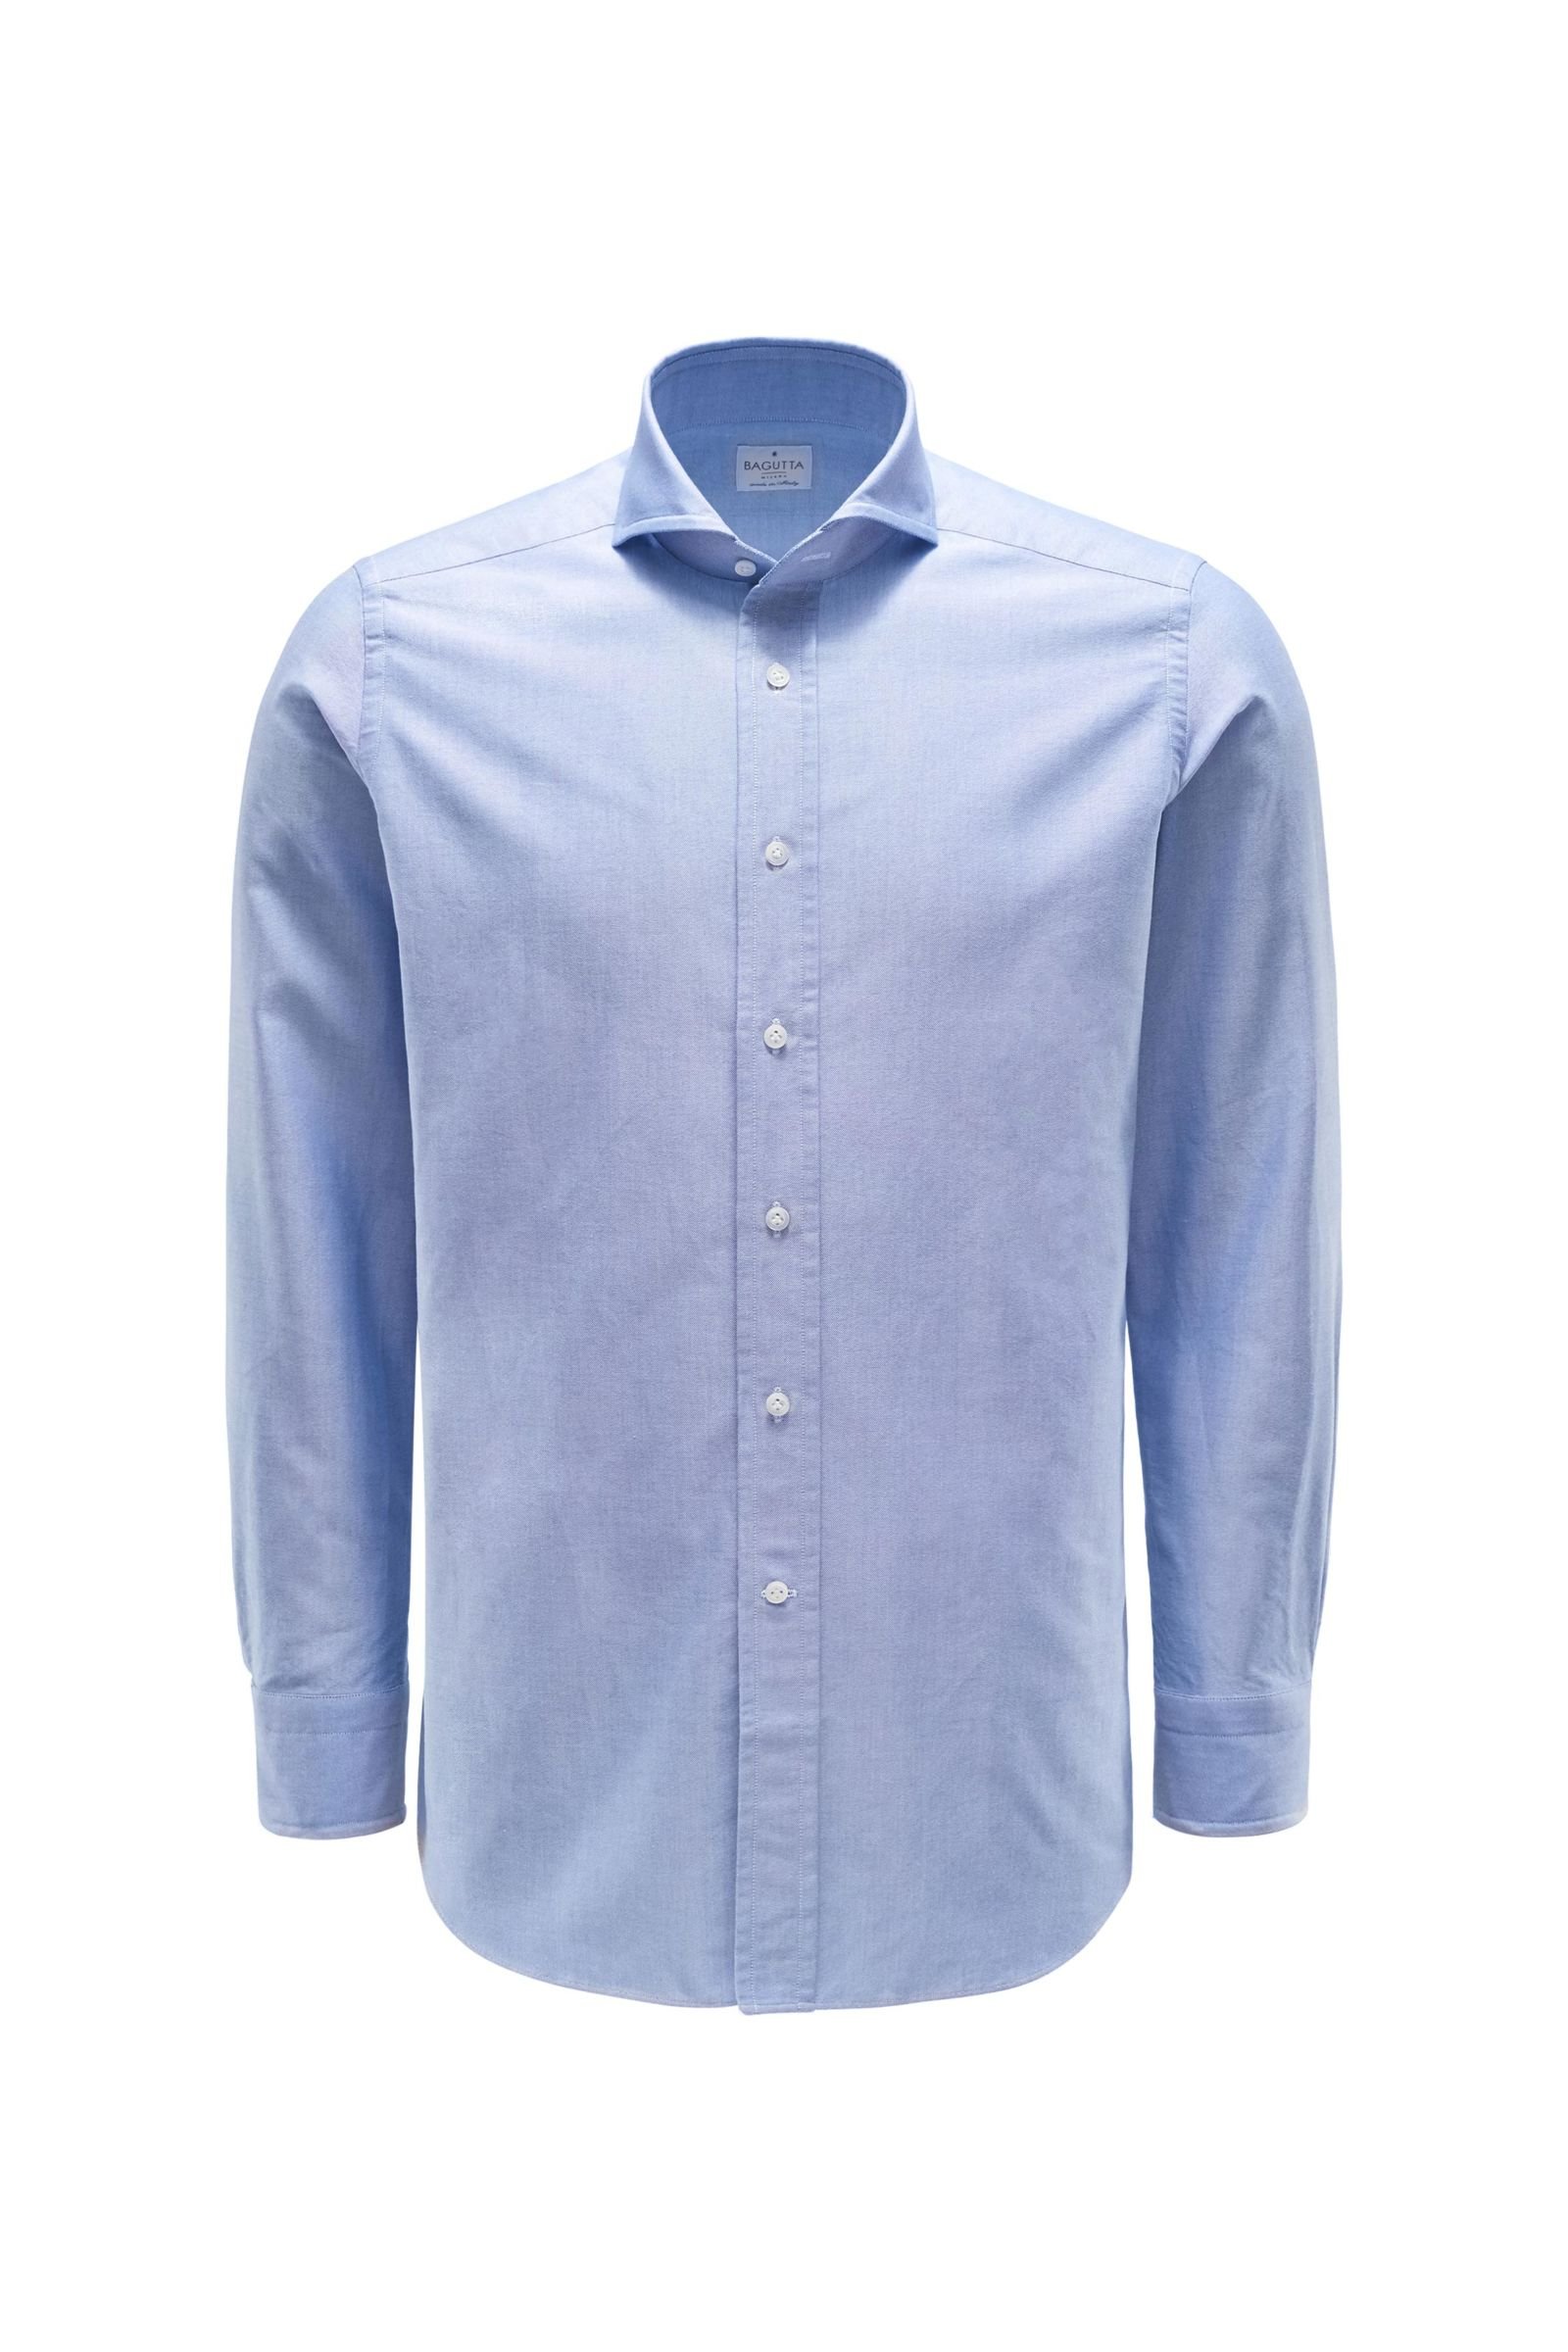 Oxford shirt 'Windsor' shark collar light blue